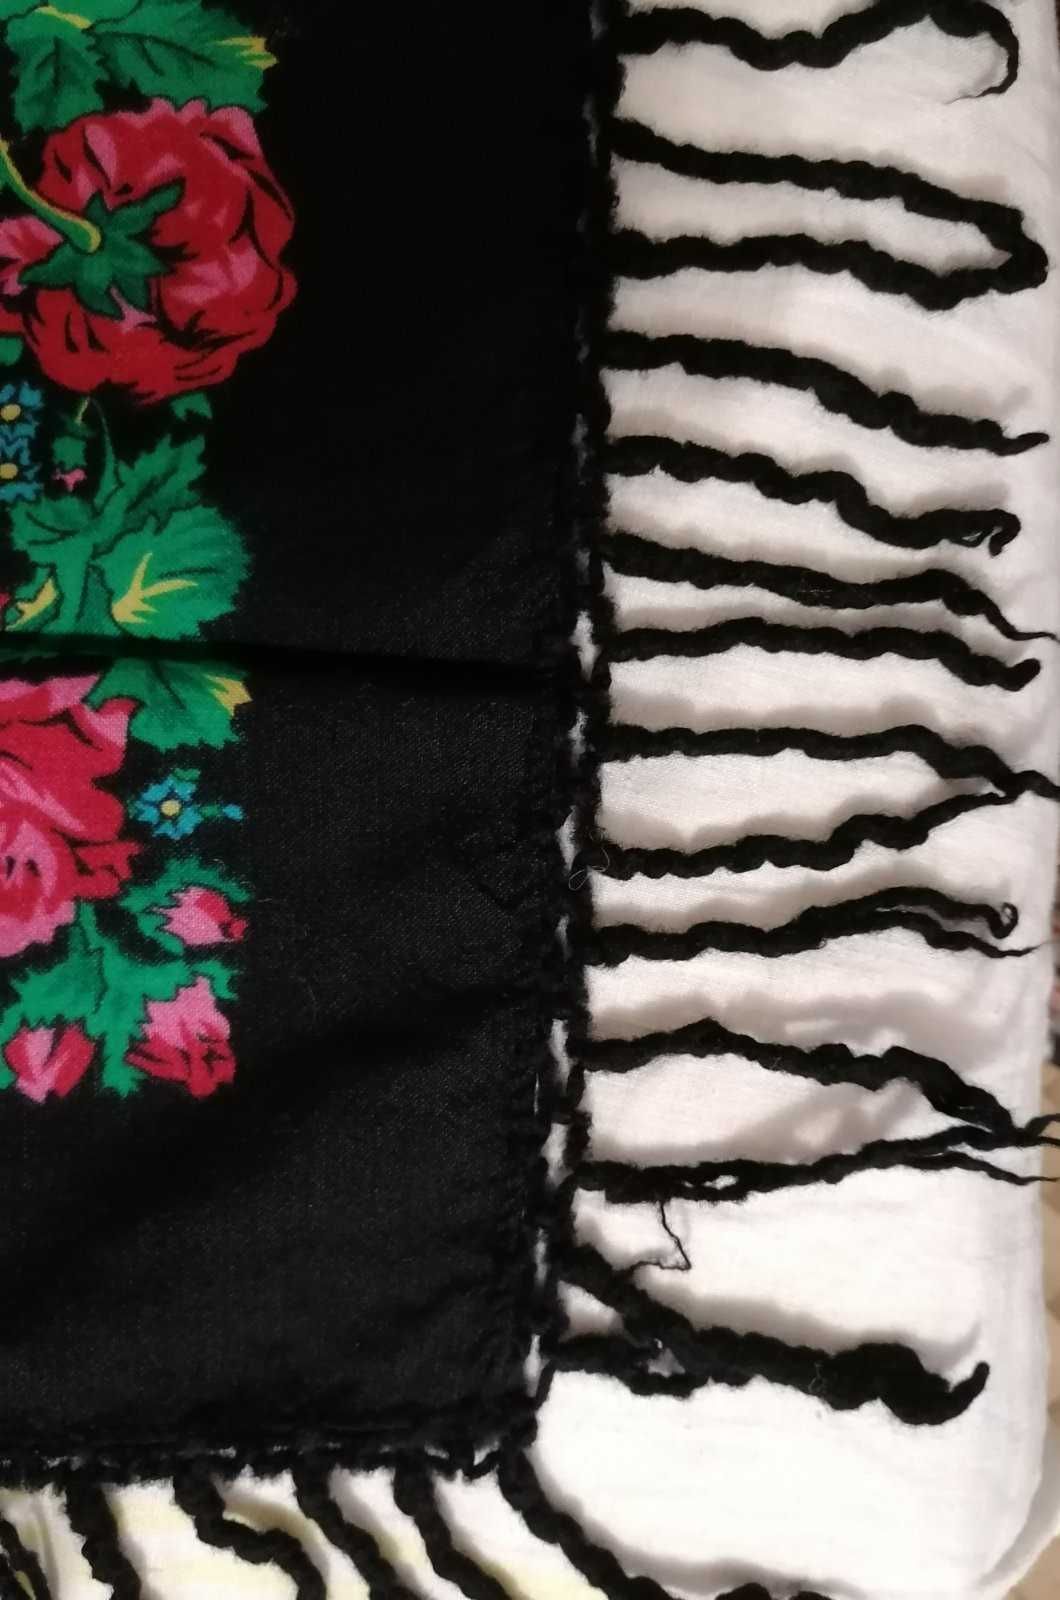 Хустка, платок, шаль, бактус. Очень красивые розы на черном фоне.